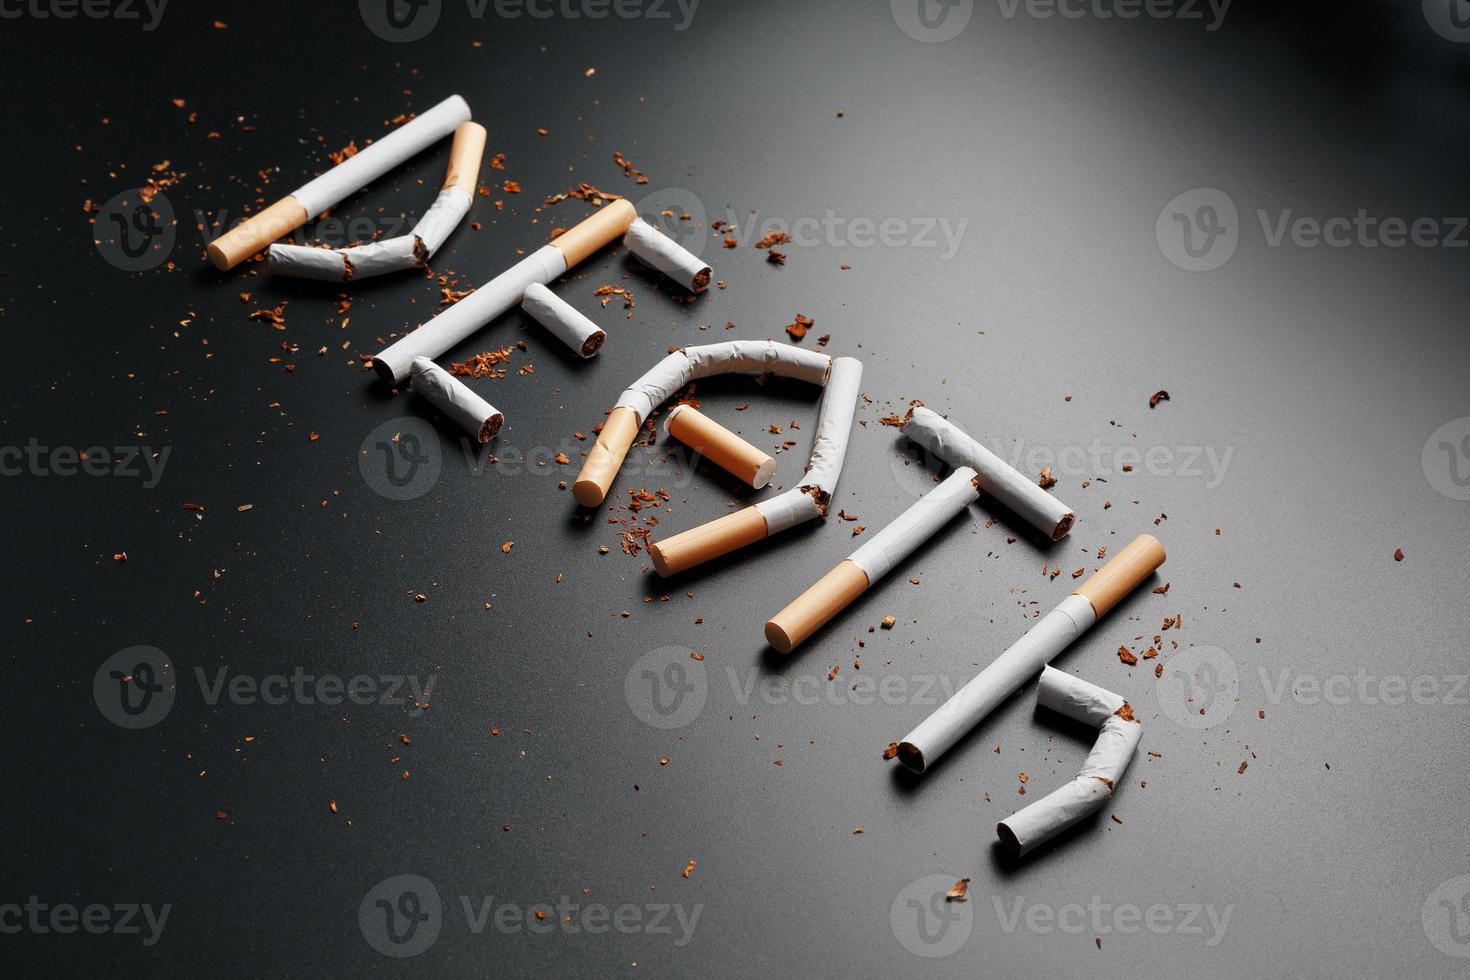 la inscripción muerte por cigarrillos en un fondo negro. deja de fumar. el concepto de fumar mata. inscripción de motivación para dejar de fumar, hábito poco saludable. foto